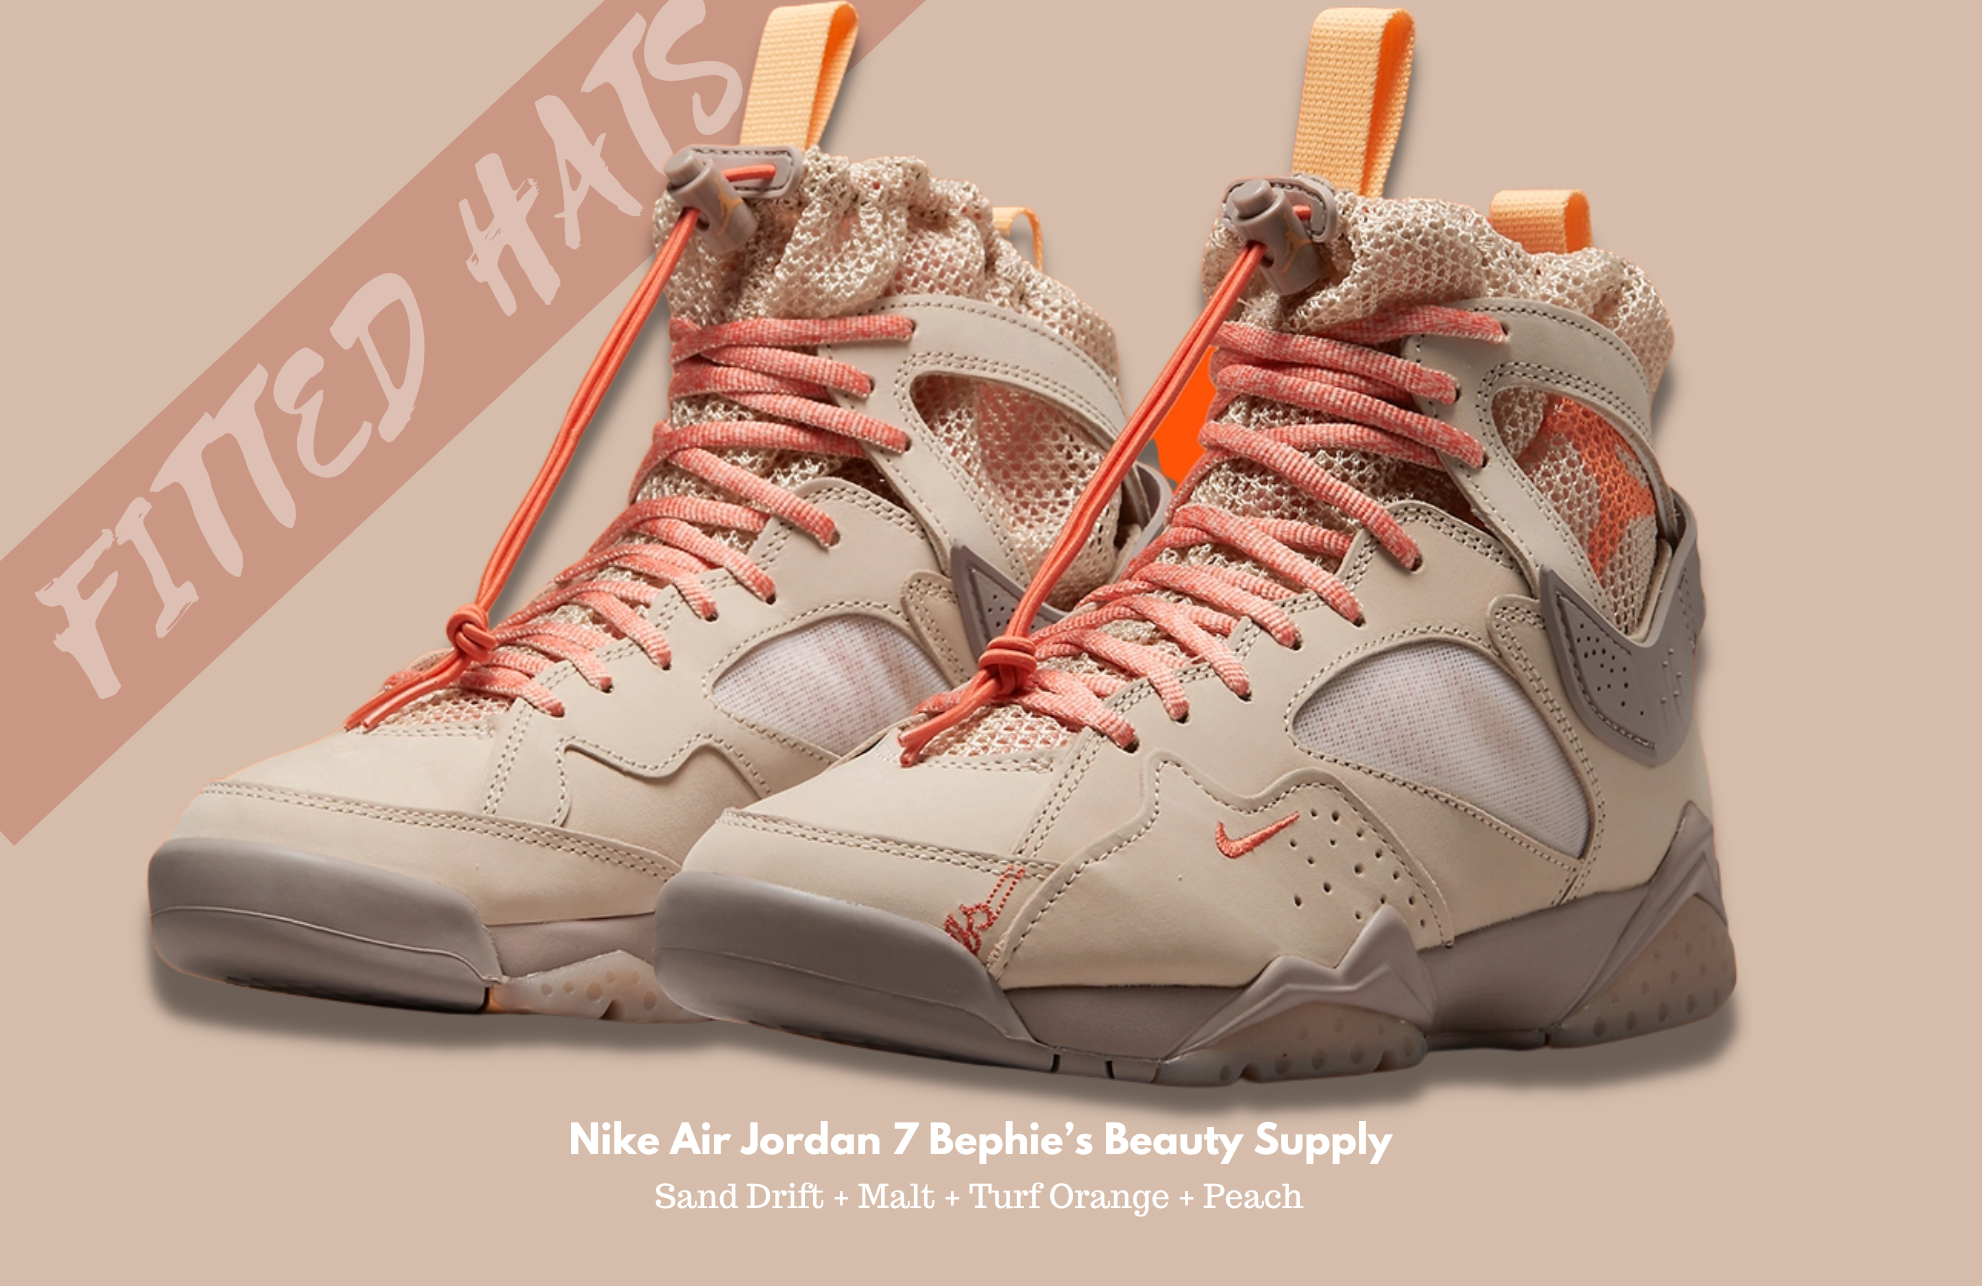 Nike Air Jordan 7 Bephie’s Beauty Supply